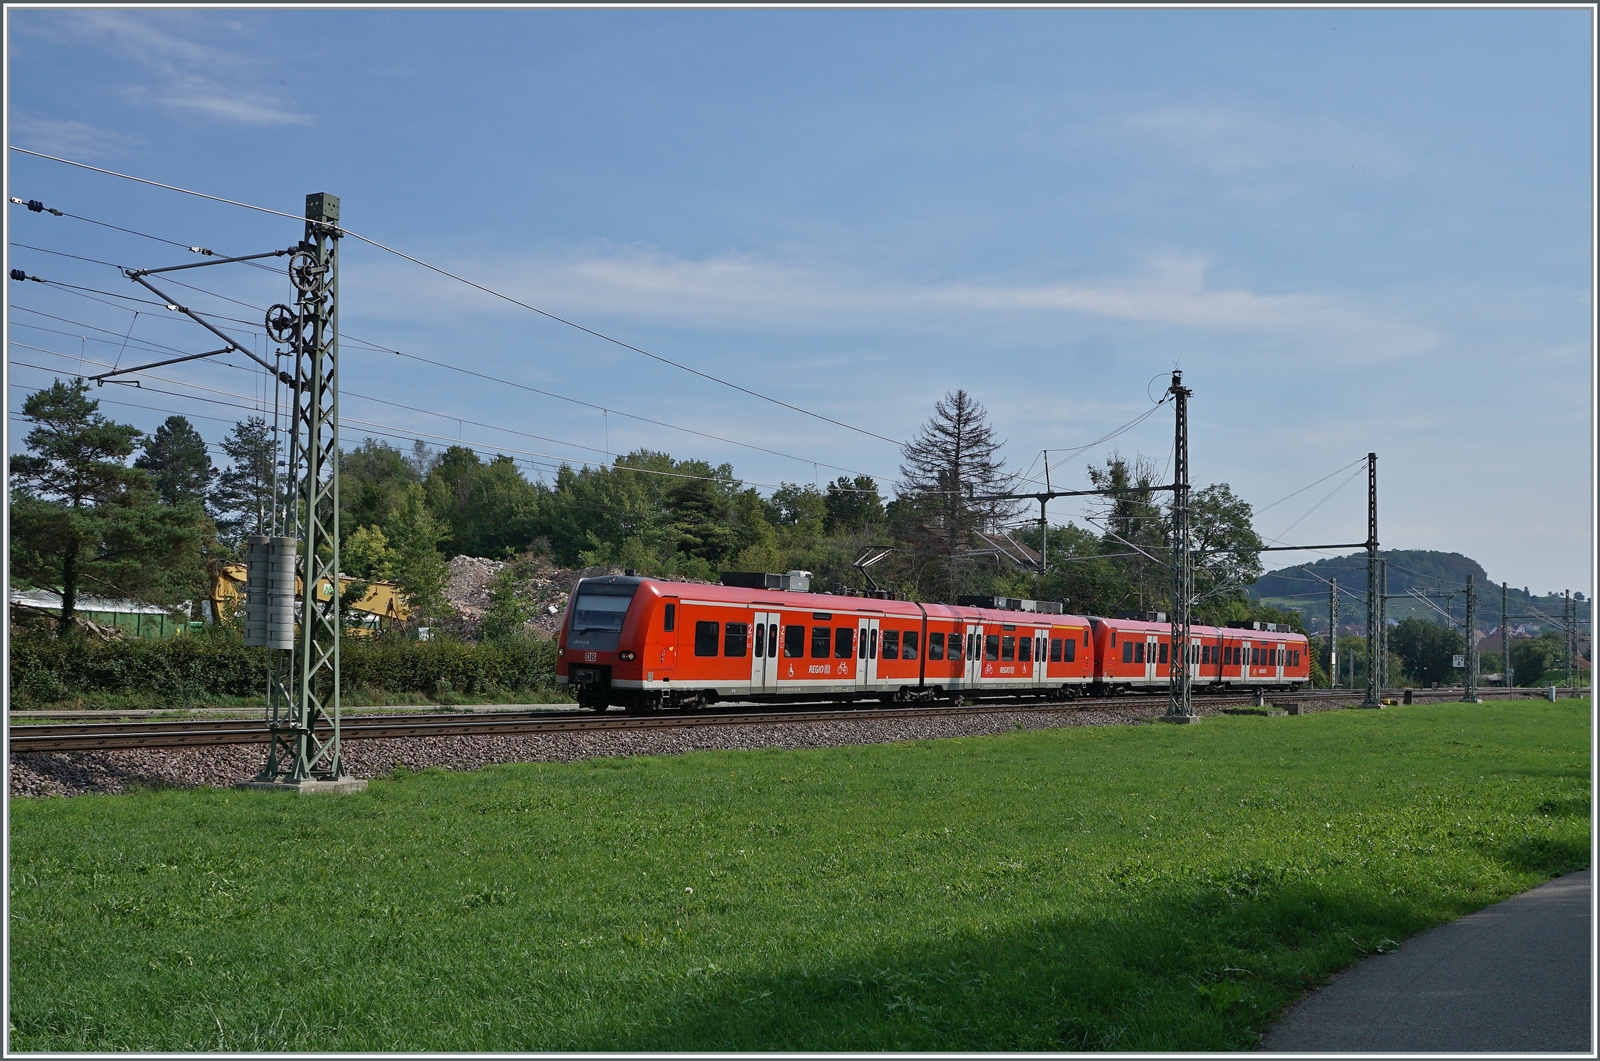 DB 426 im Einsatz auf der Strecke Singen - Schaffhausen bei Thayngen; da infolge von Personalmangel die Züge nur im Stundentakt verkehrten, wurden sie in Doppeltraktion angeboten, so dass zumindest mathematisch die Sitzplatz-Kapazität pro Stunde stimmte... 

30. August 2022